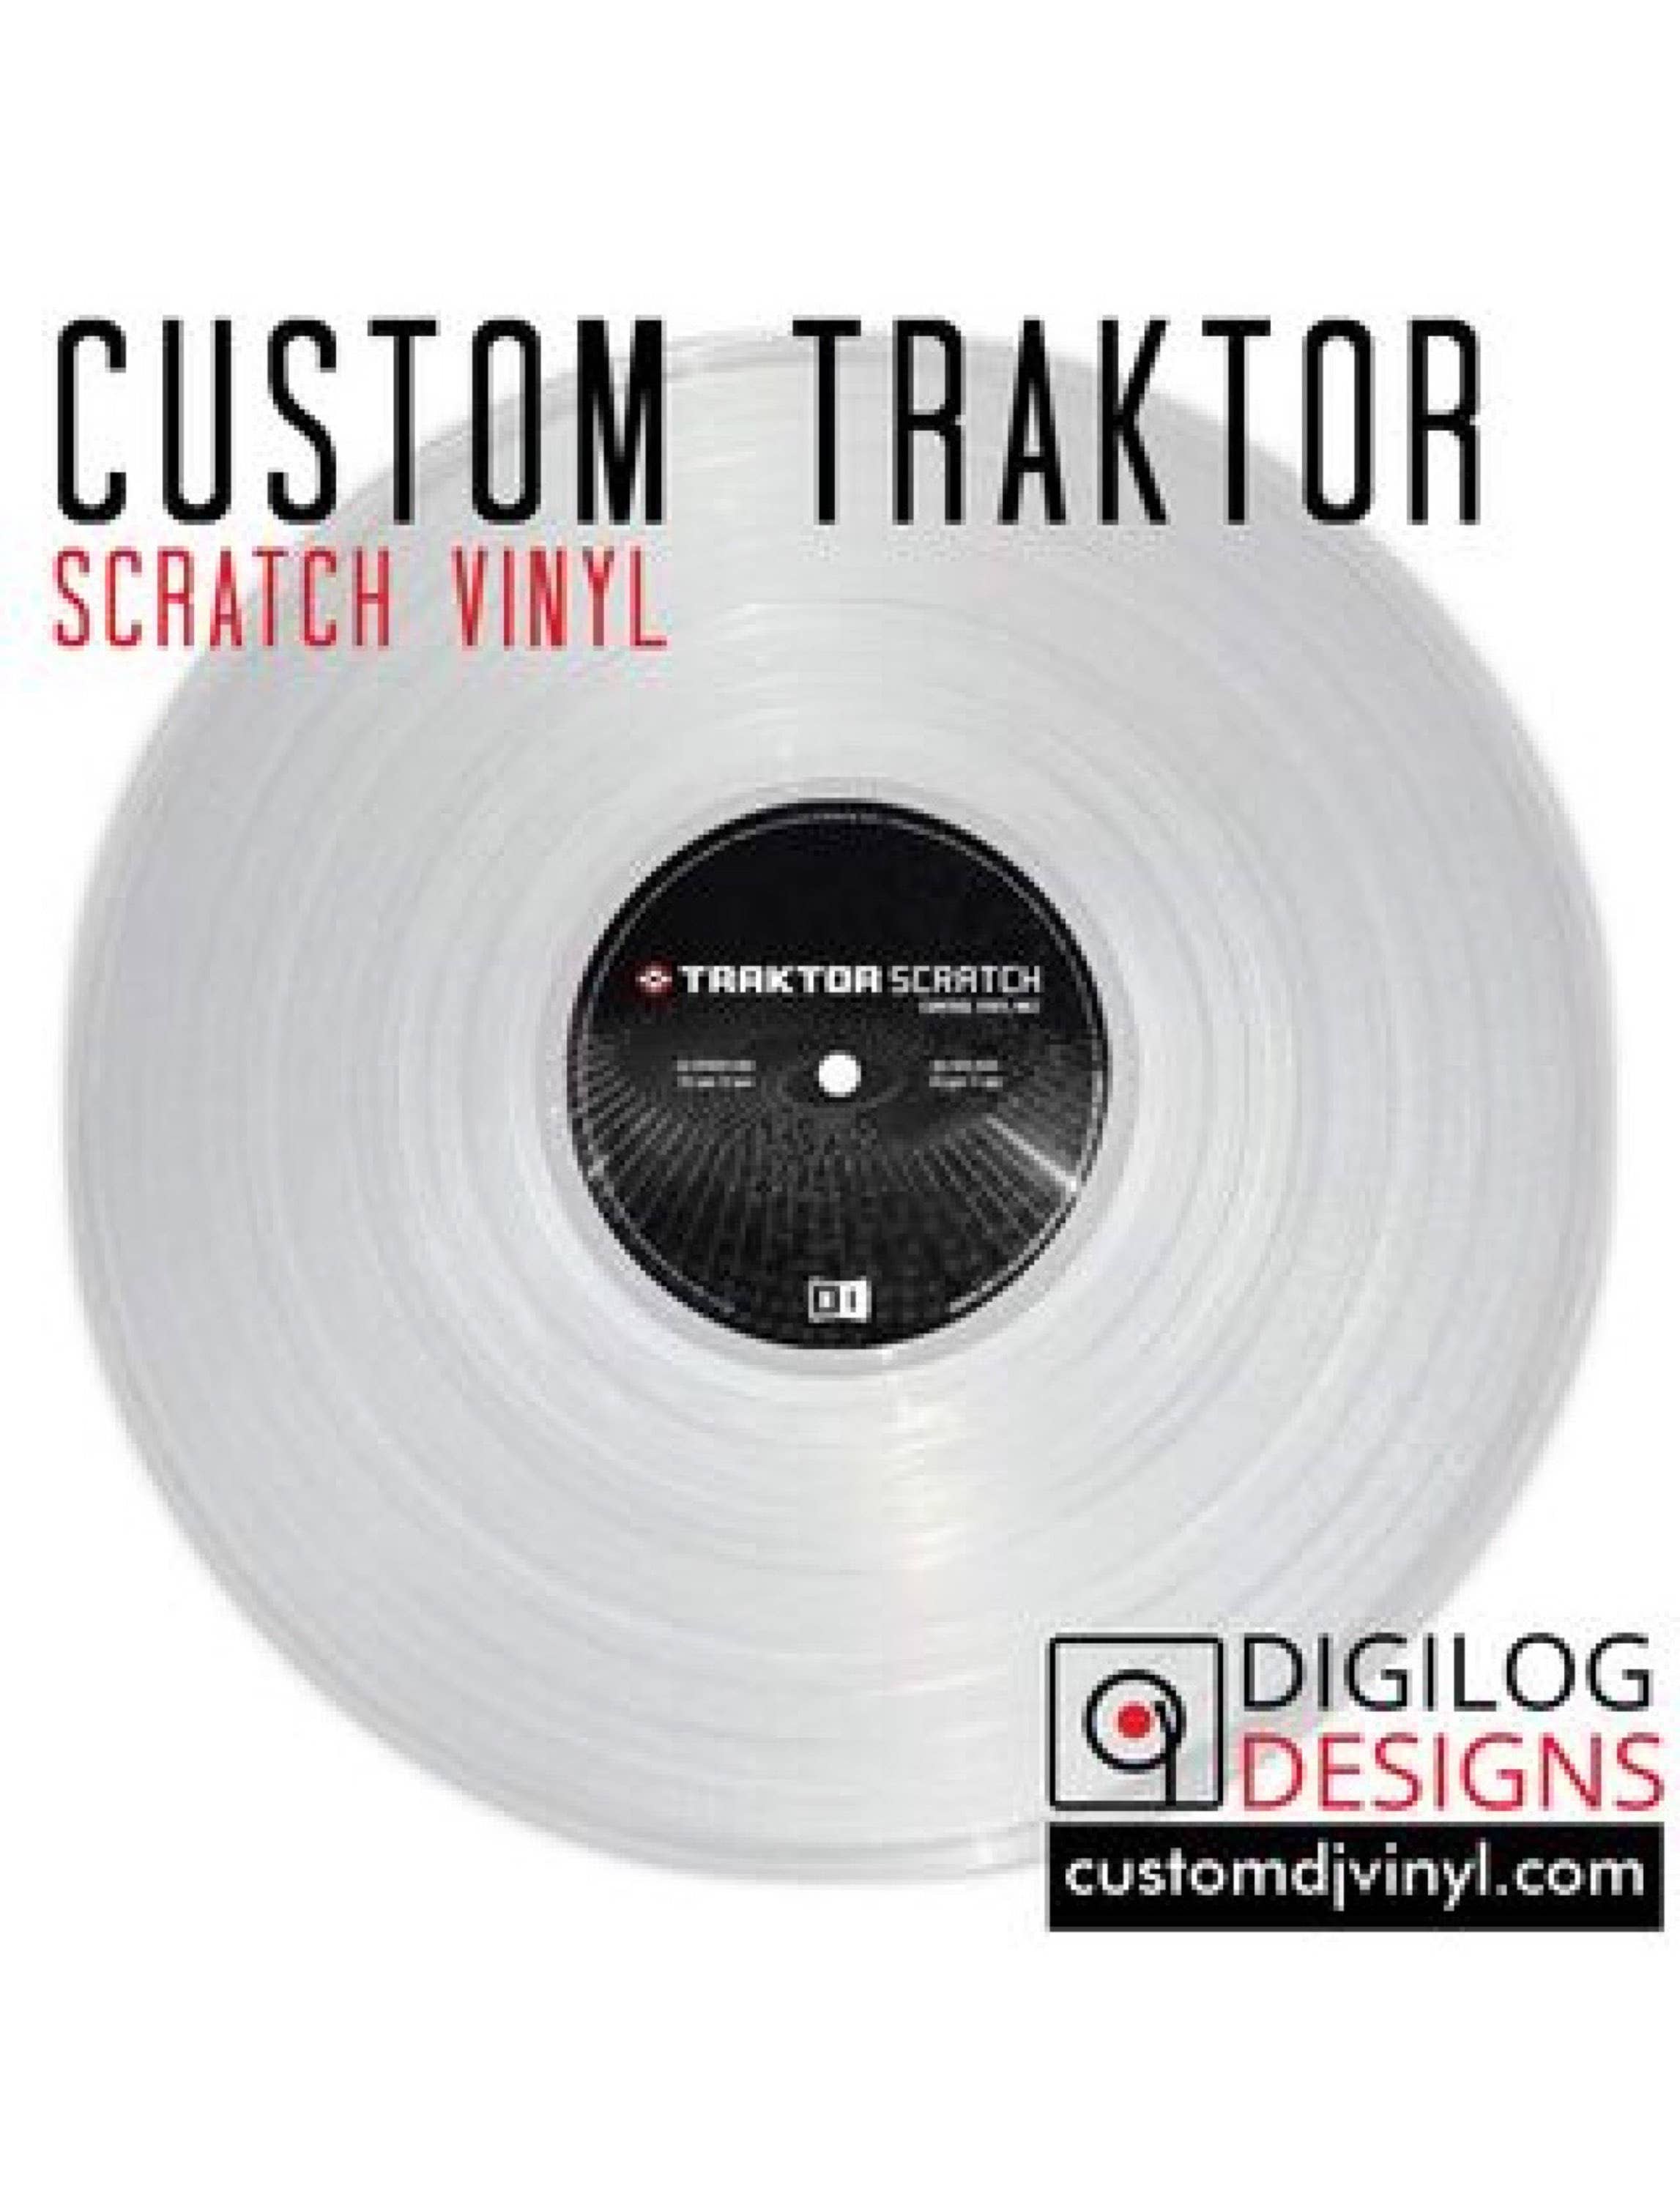 Custom traktorcontrol Vinyl /native Instruments / | Etsy